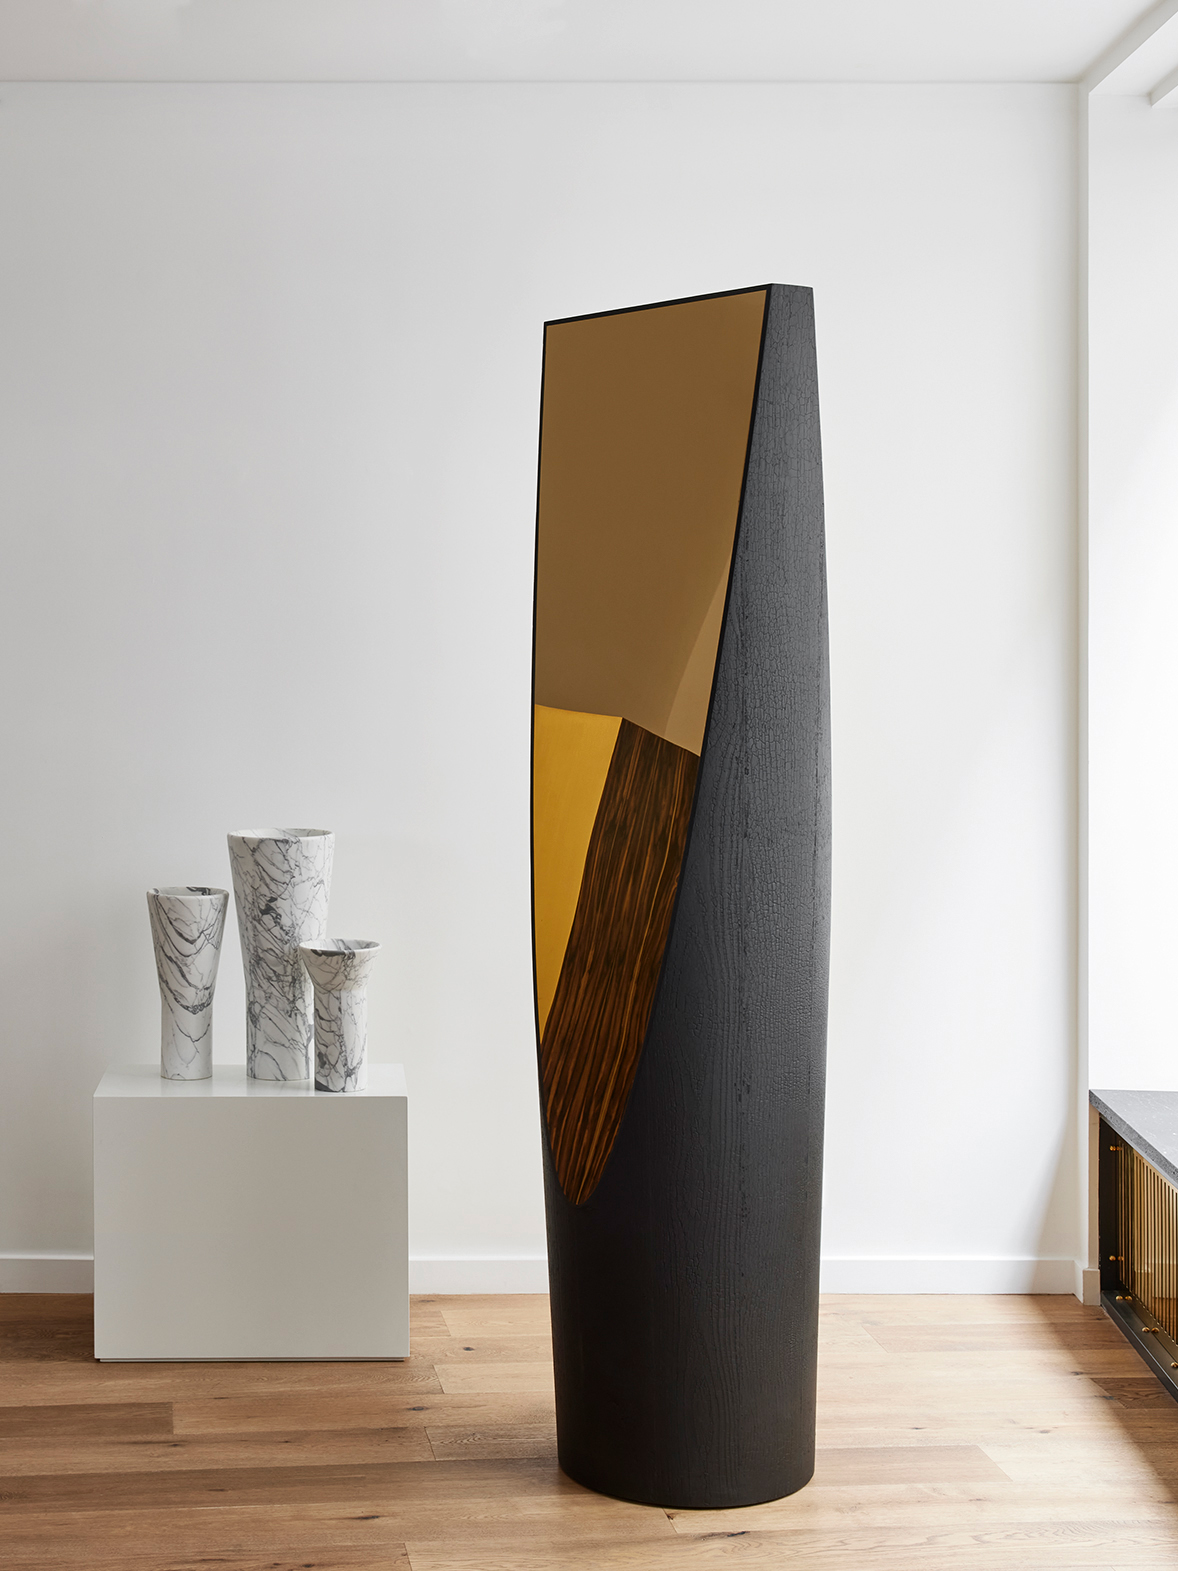 Unique Pieces - Galerie Negropontes